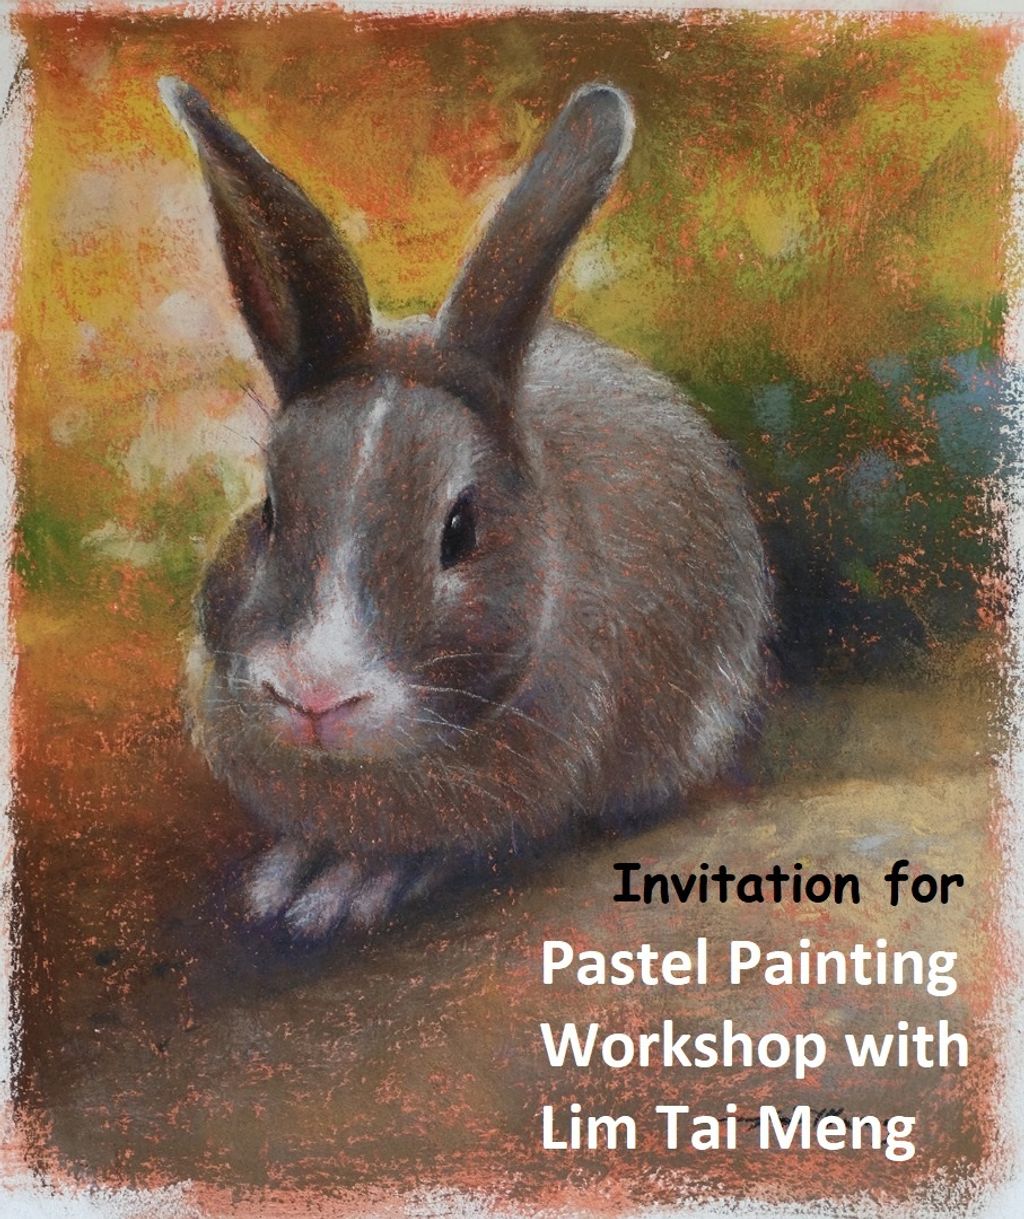 Pastel Paniting Workshop poster c.jpg